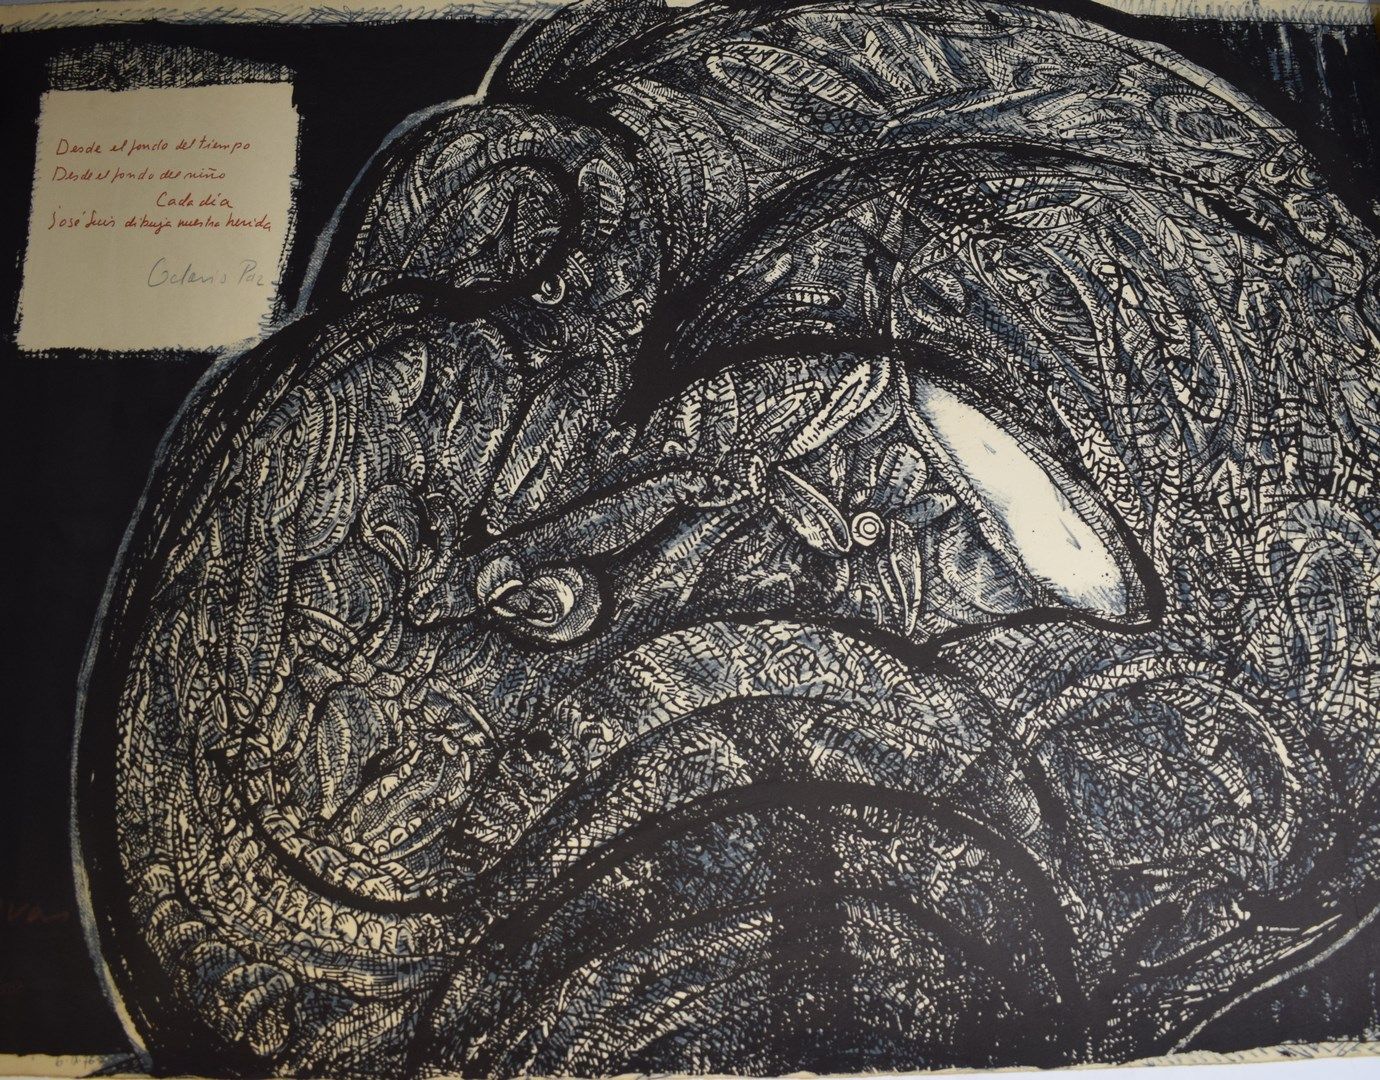 Null 何塞-路易斯(1934-2017)

带有奥克塔维奥-帕斯诗句的作品（黑色），6.IX.76

石版画，左下角有签名、编号95/500和日期 

小小&hellip;